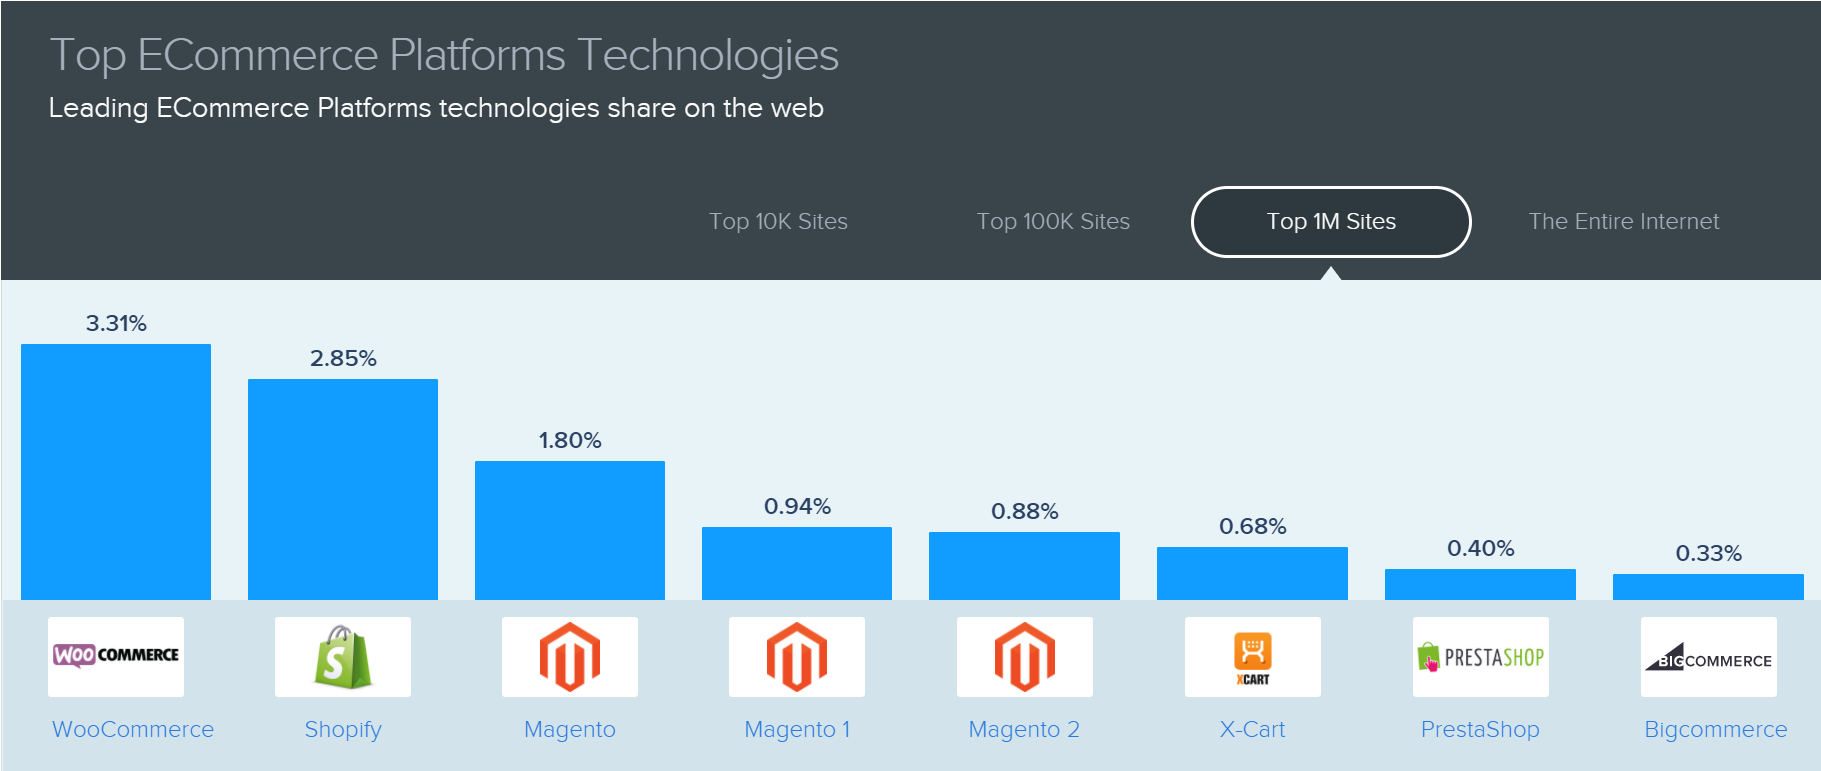 eCommerce Platform Technology Sites (Top 1M Sites)